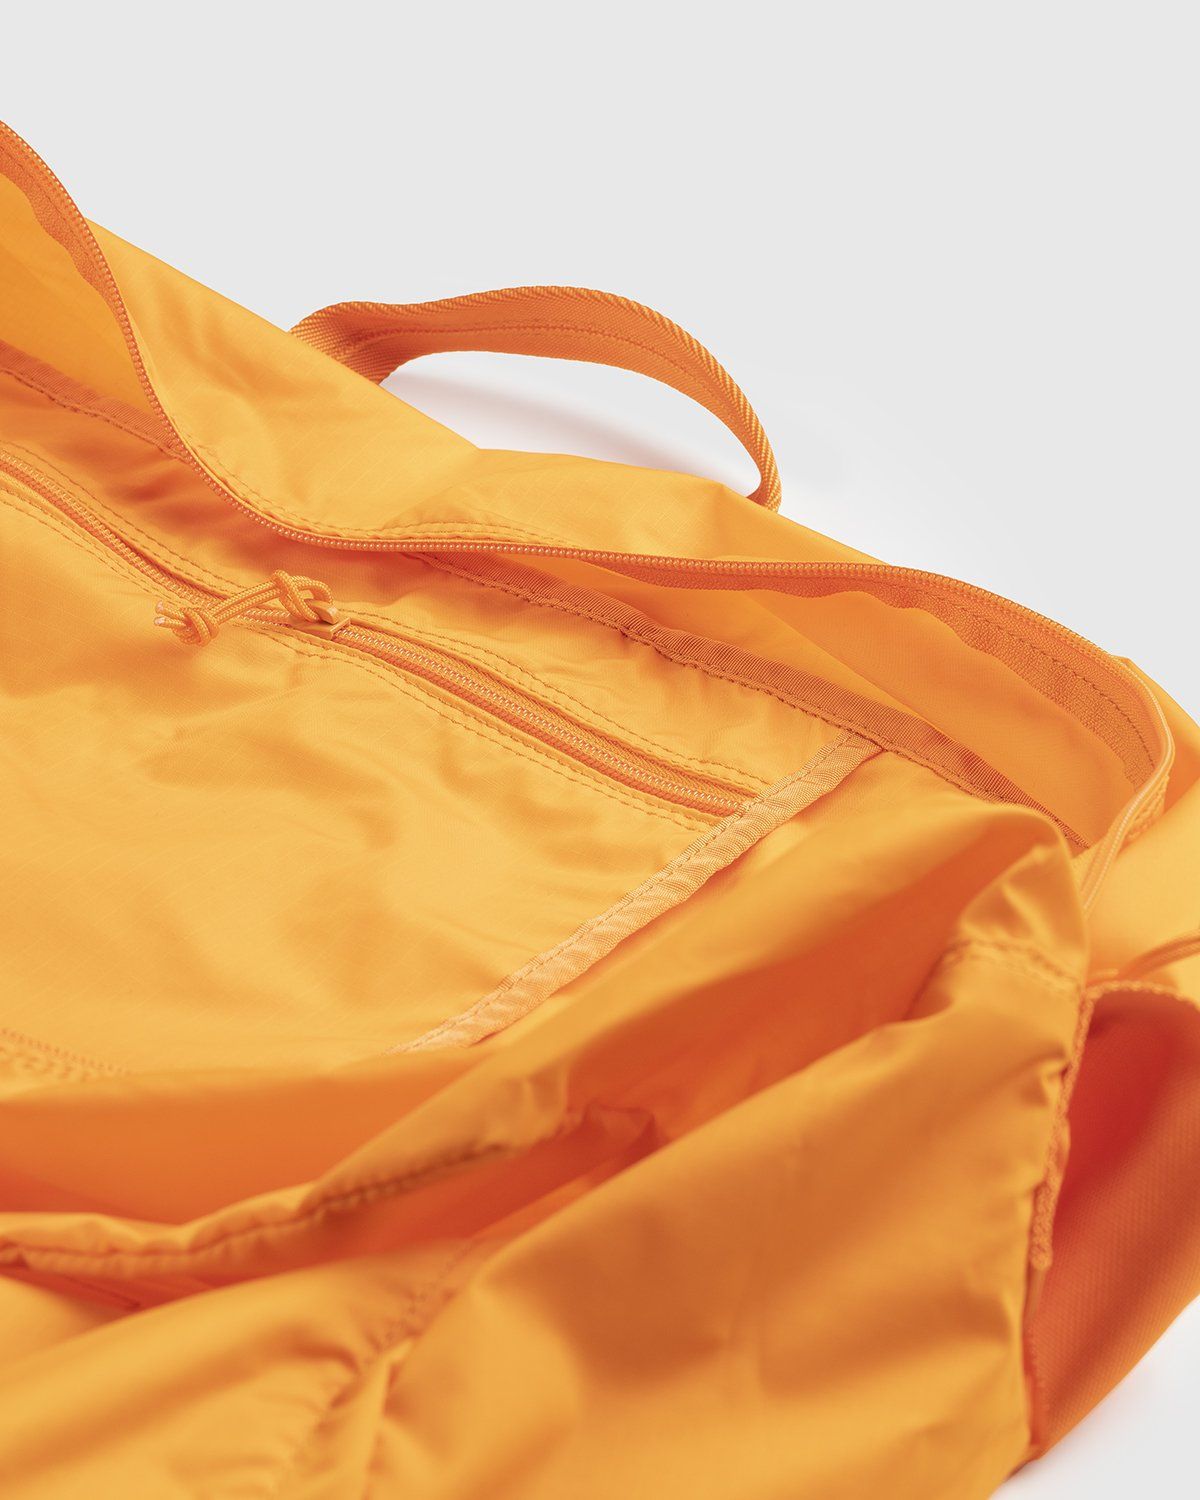 Porter-Yoshida & Co. – Flex 2-Way Duffle Bag Orange - Duffle & Top Handle Bags - Orange - Image 4